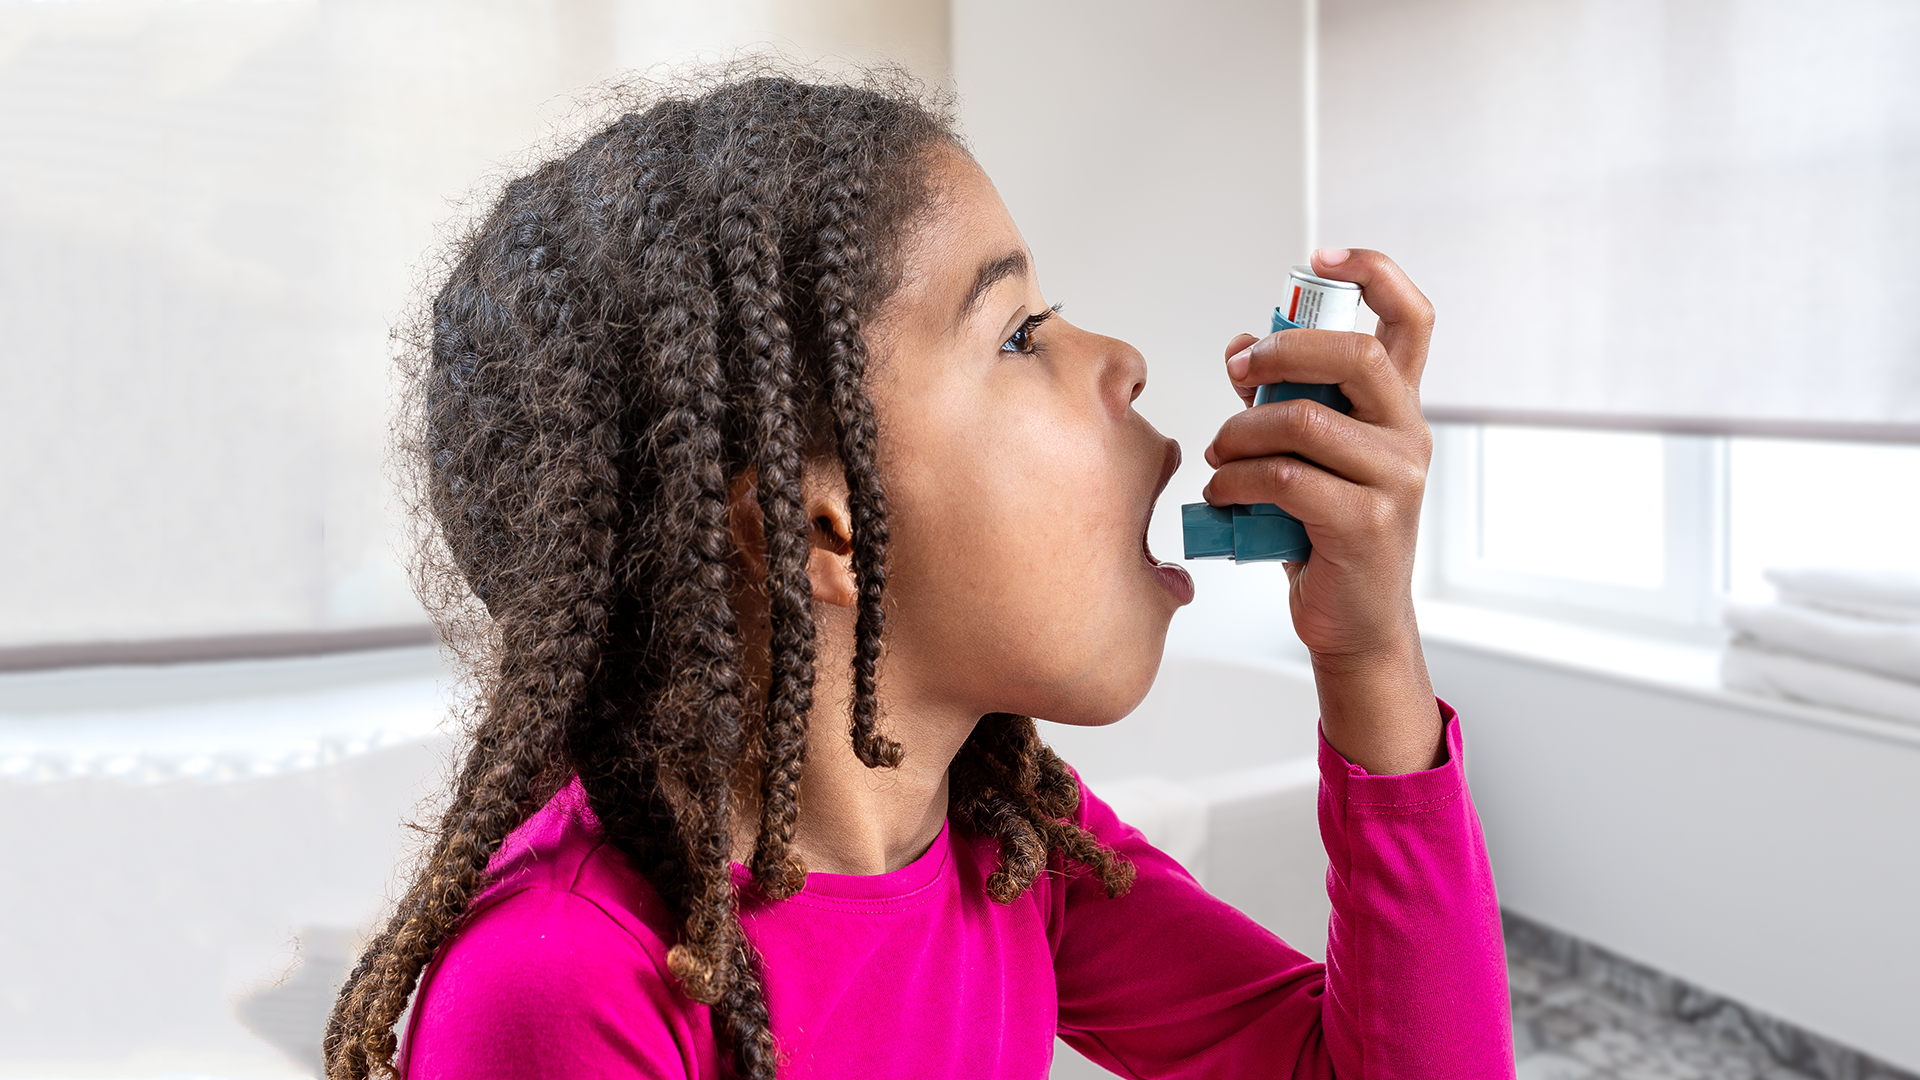 tekort aan pufjes voor astmapatiënten loopt verder op